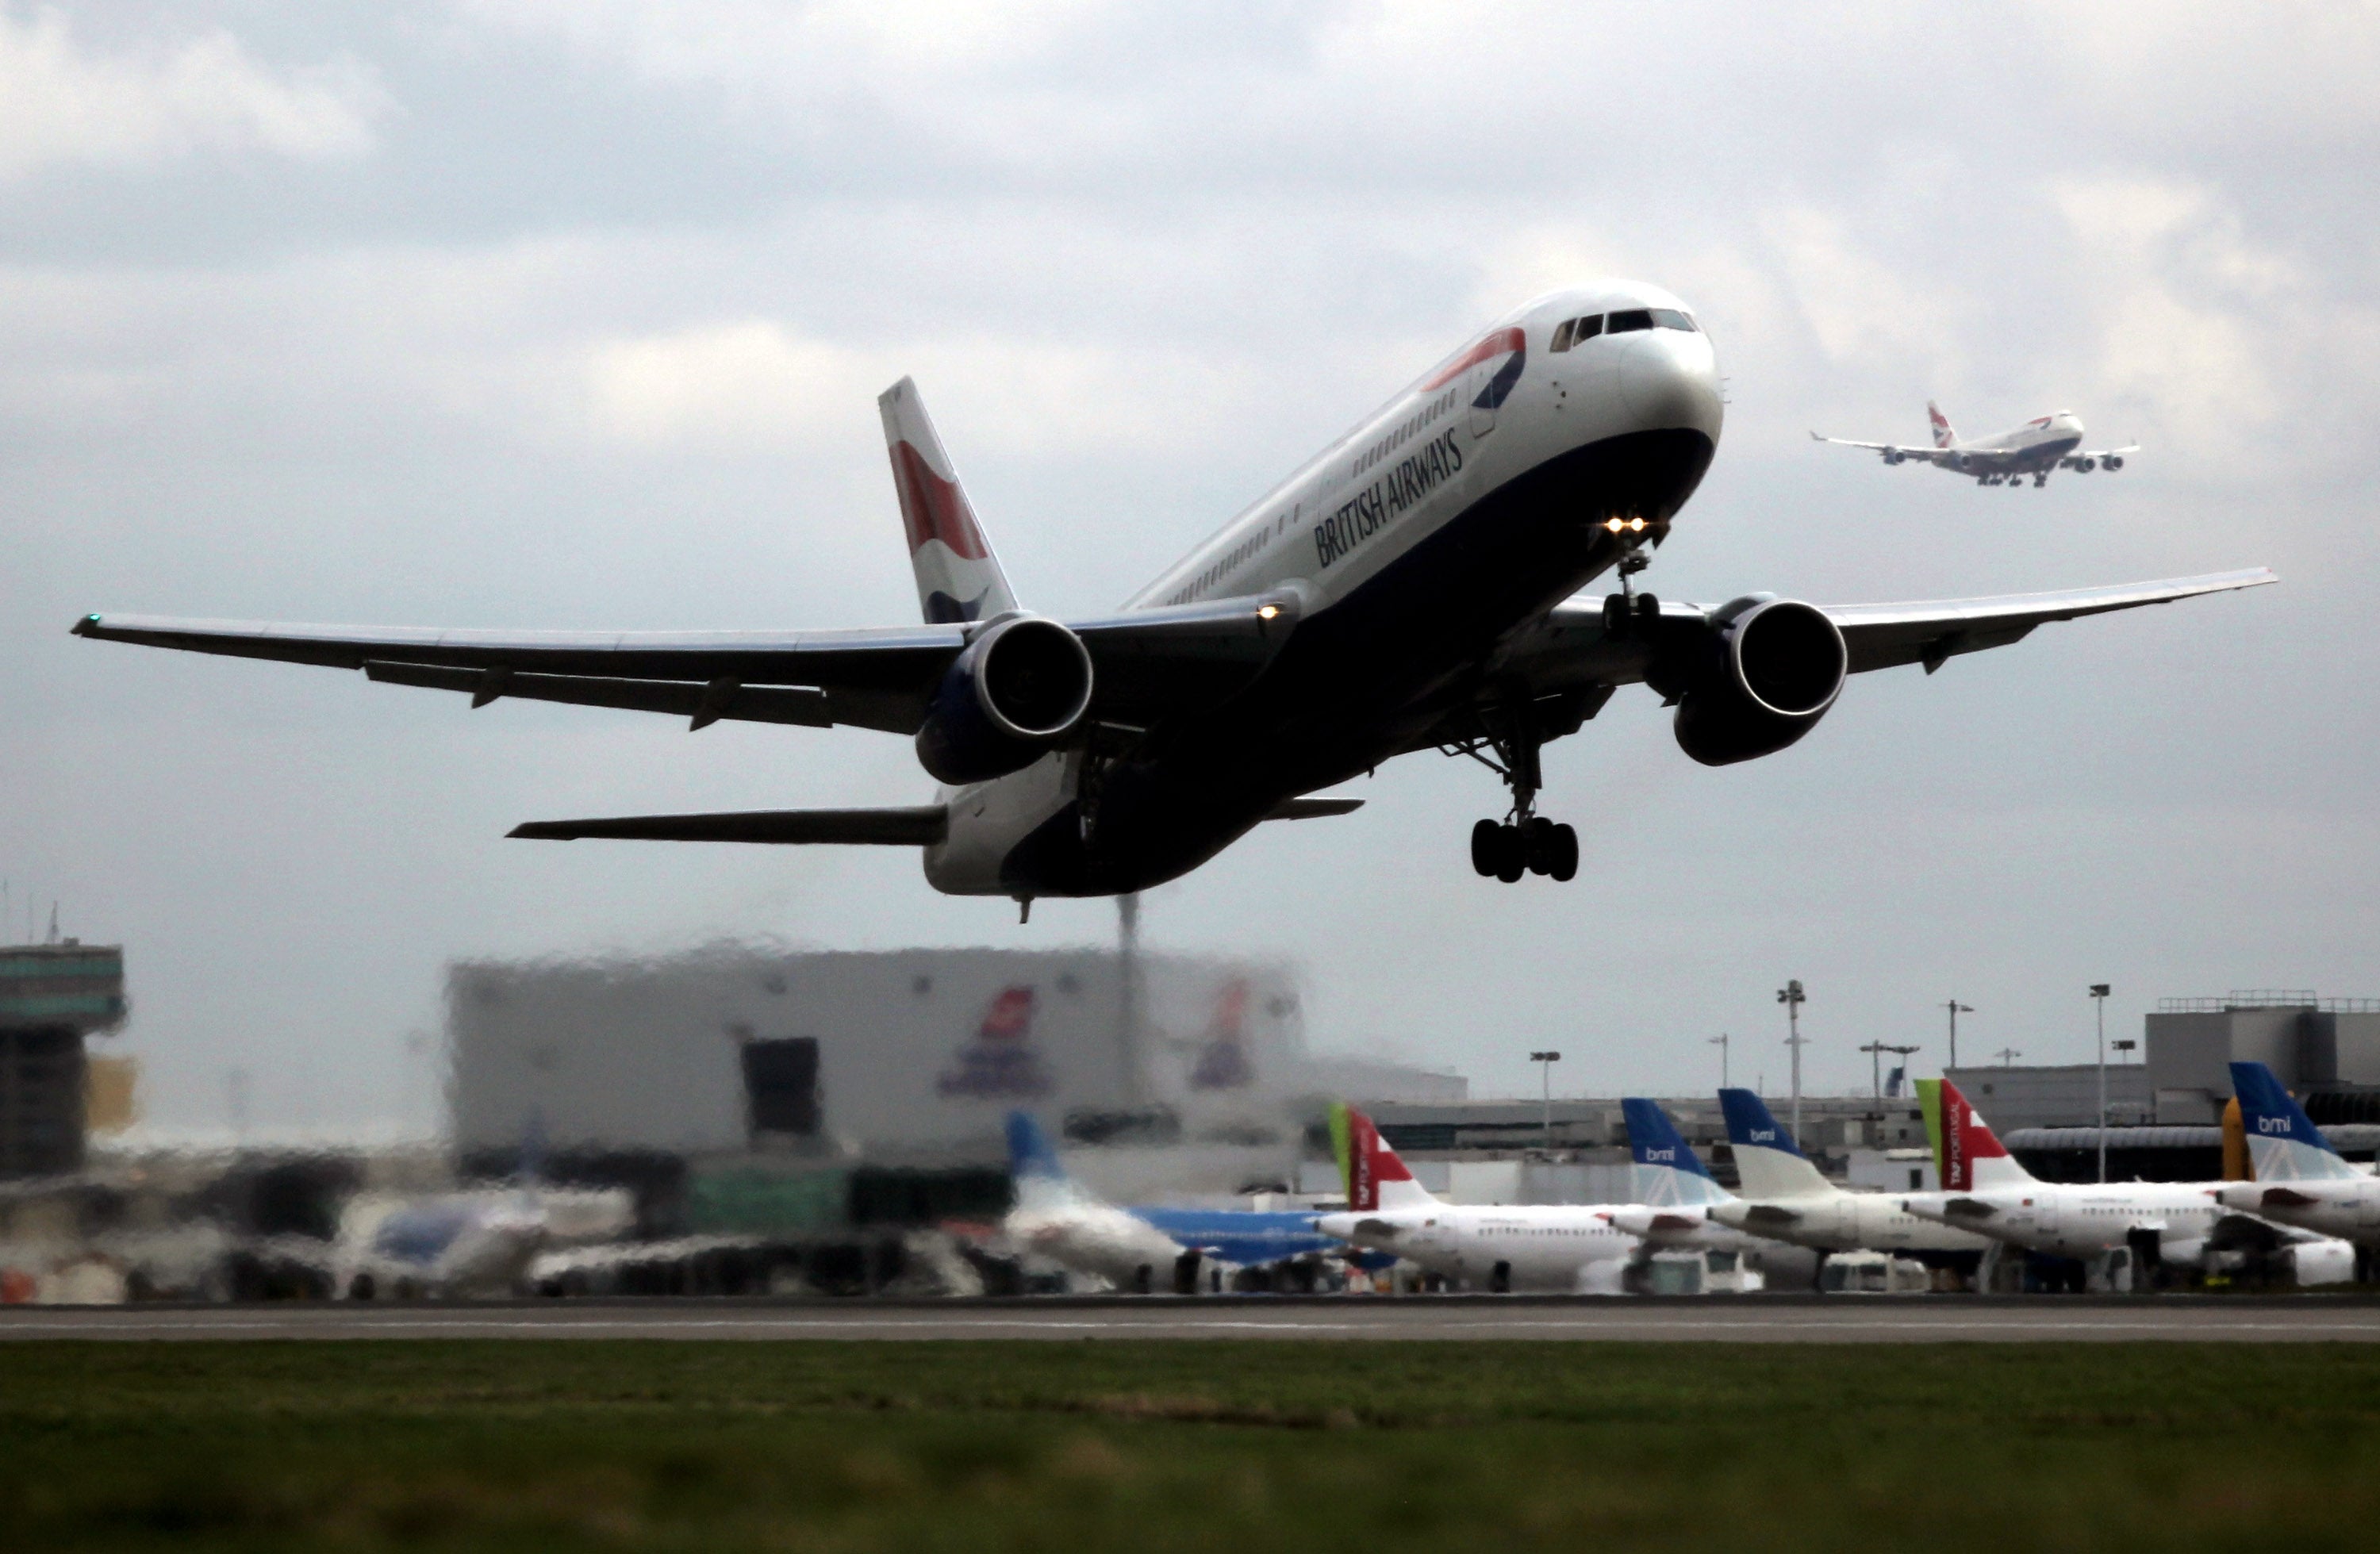 British Airways has delayed the resumption of some flights